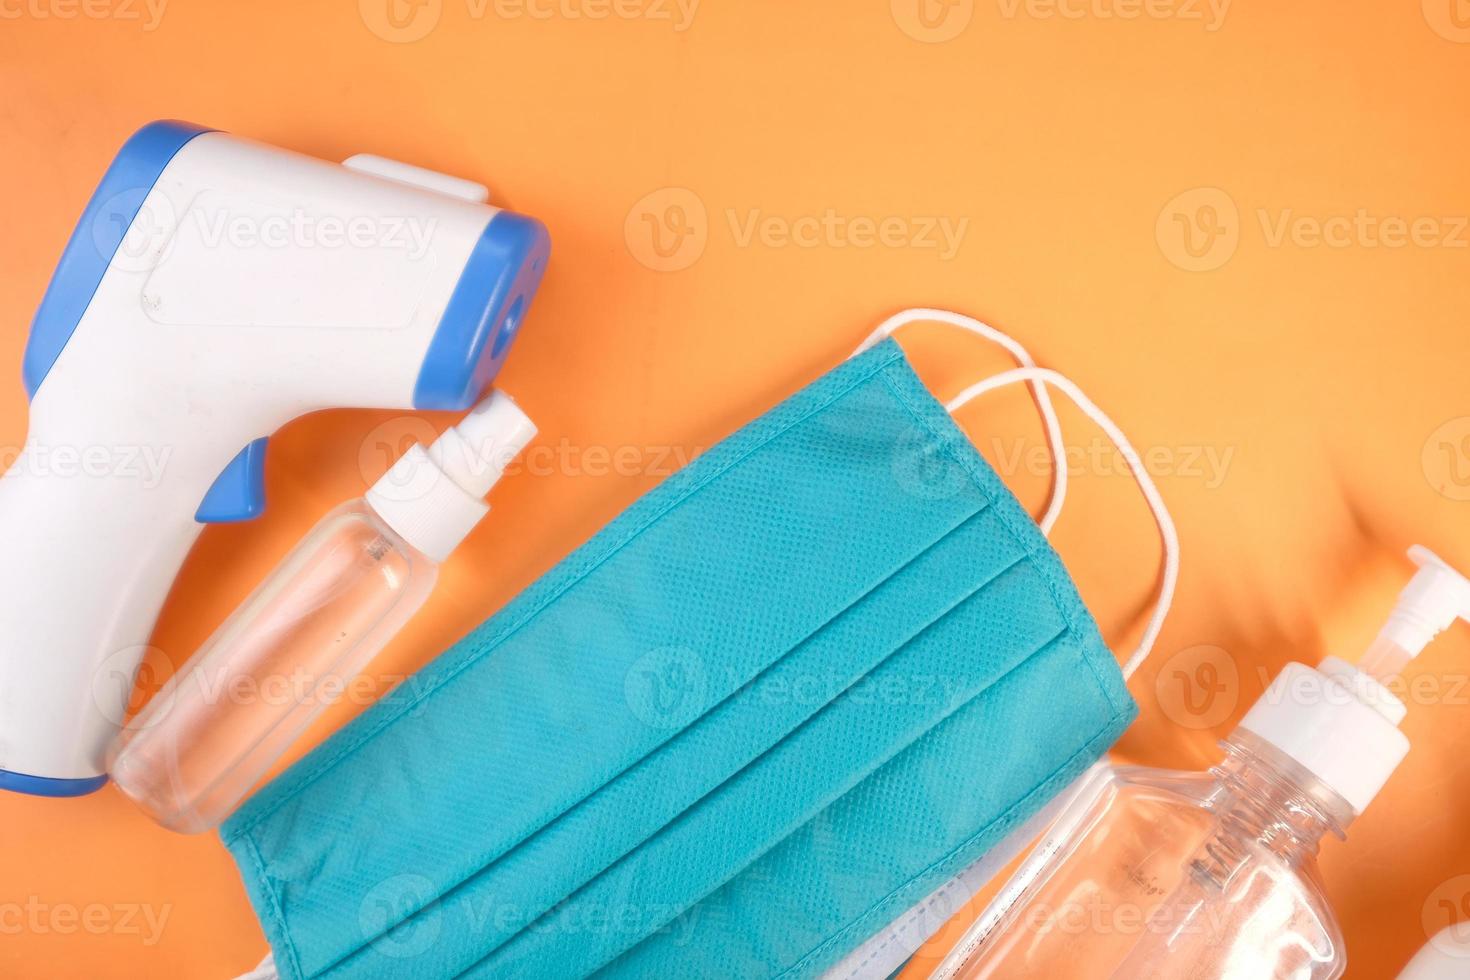 máscaras cirúrgicas, termômetro e desinfetante para as mãos em fundo laranja foto